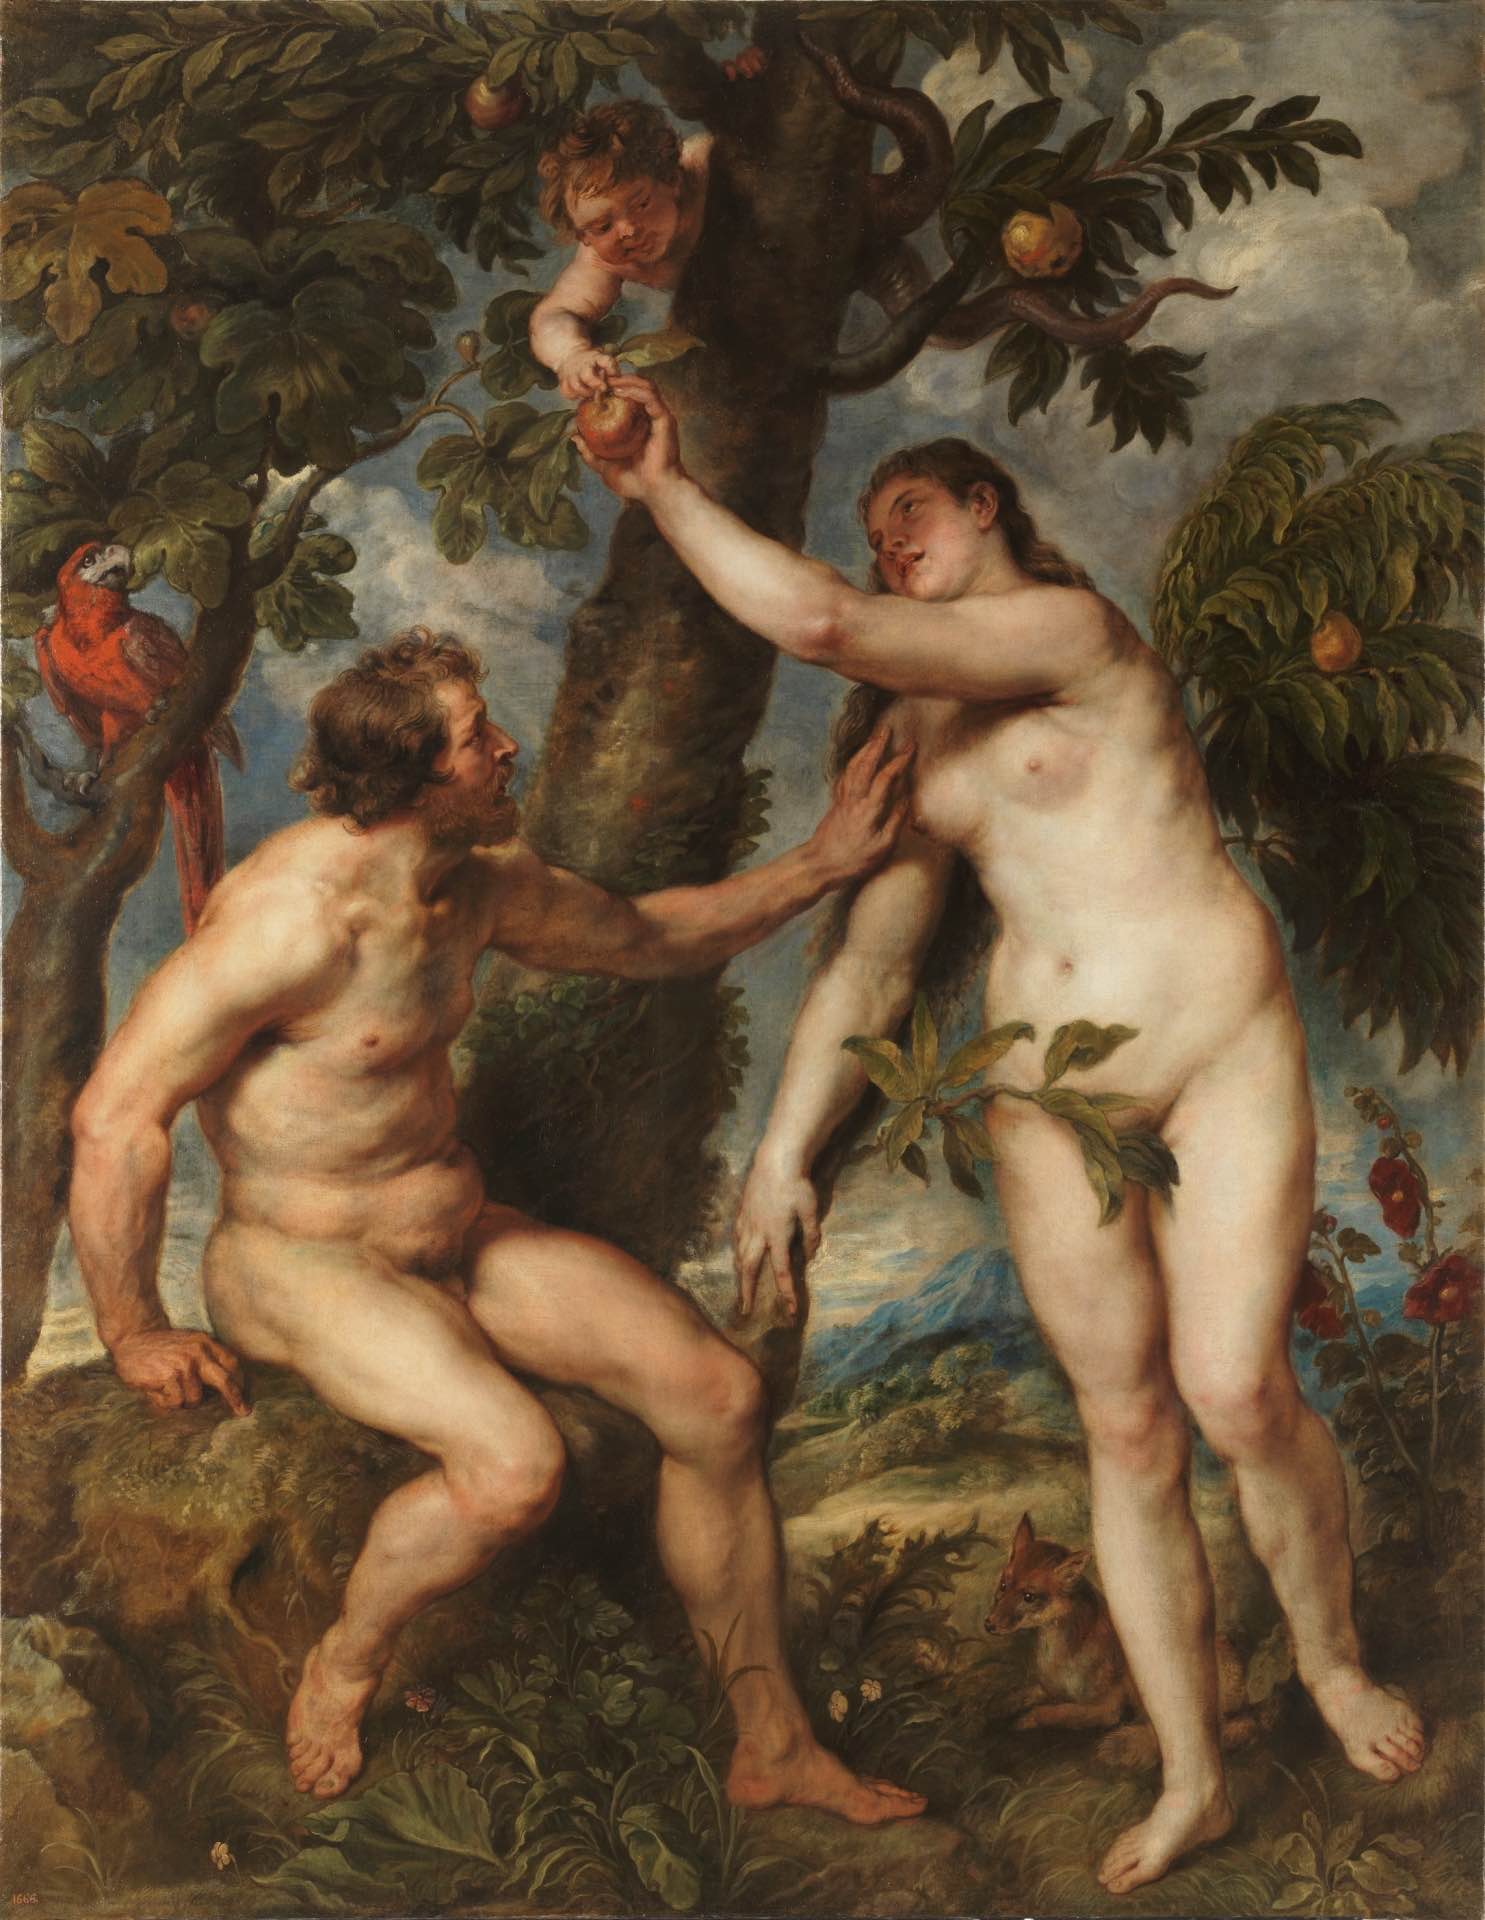 Los primeros seres humanos, la mitología detrás de Adán y Eva